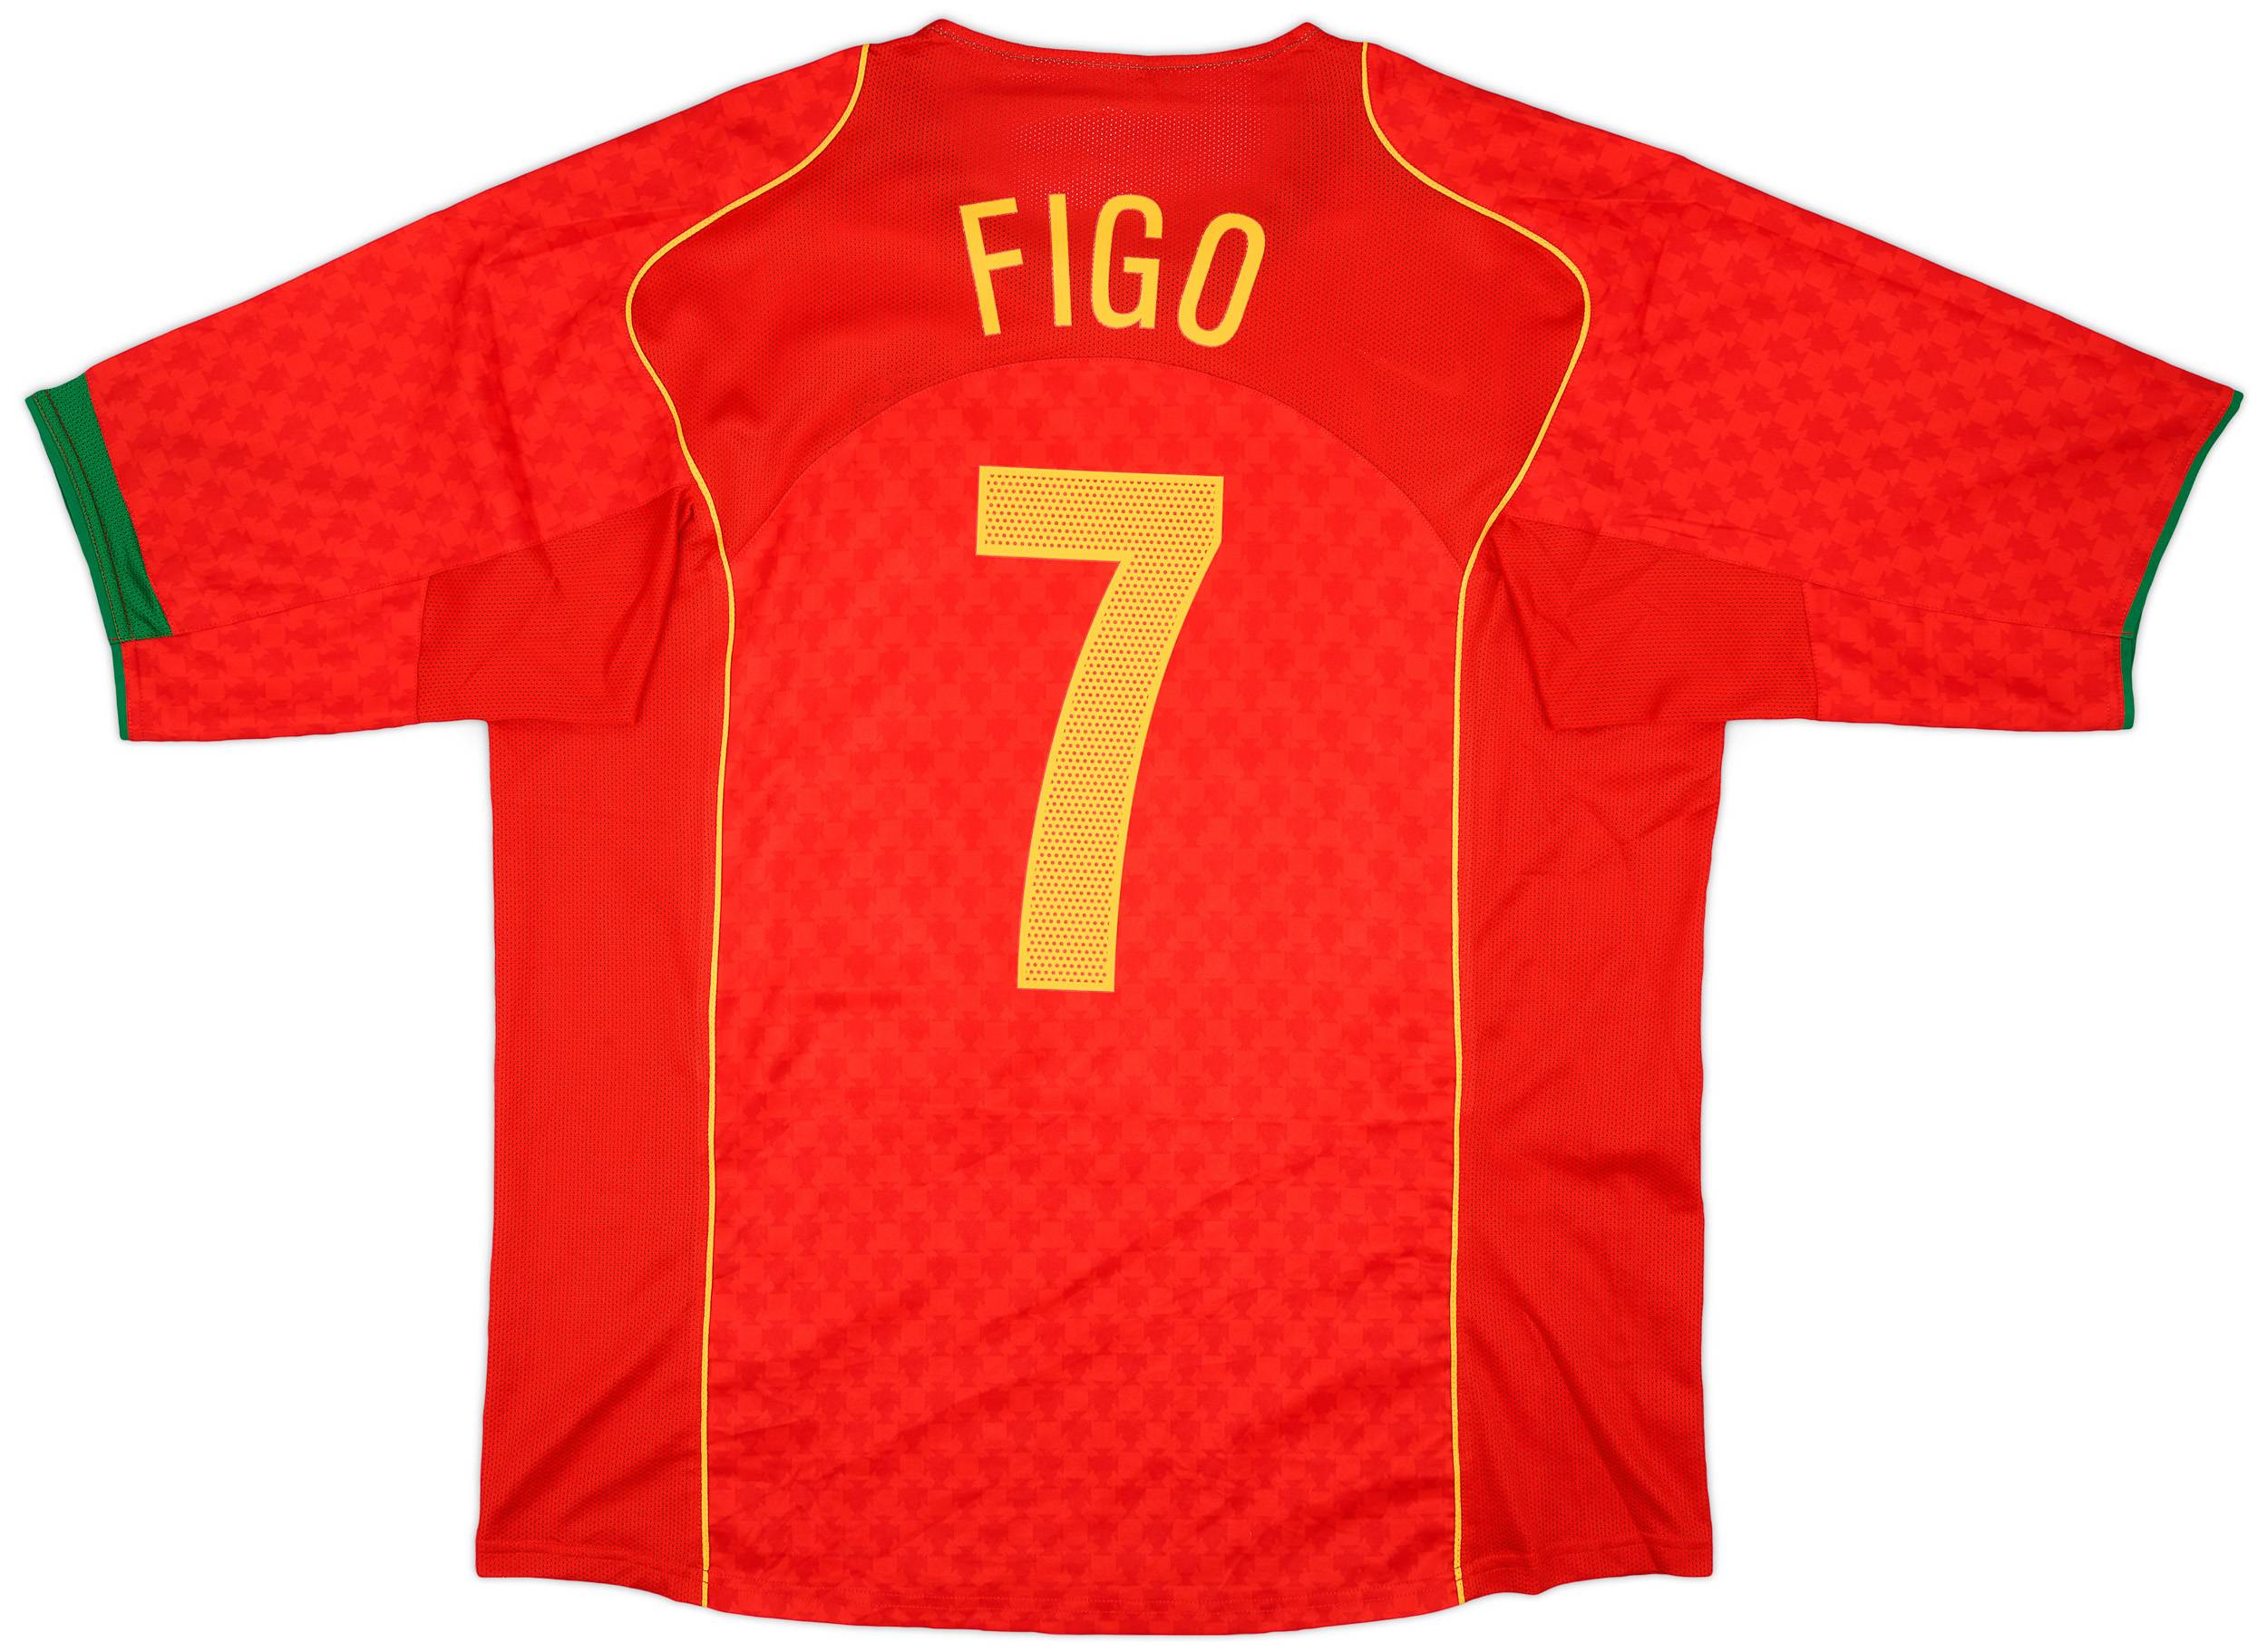 2004-06 Portugal Home Shirt Figo #7 - 9/10 - (XL)